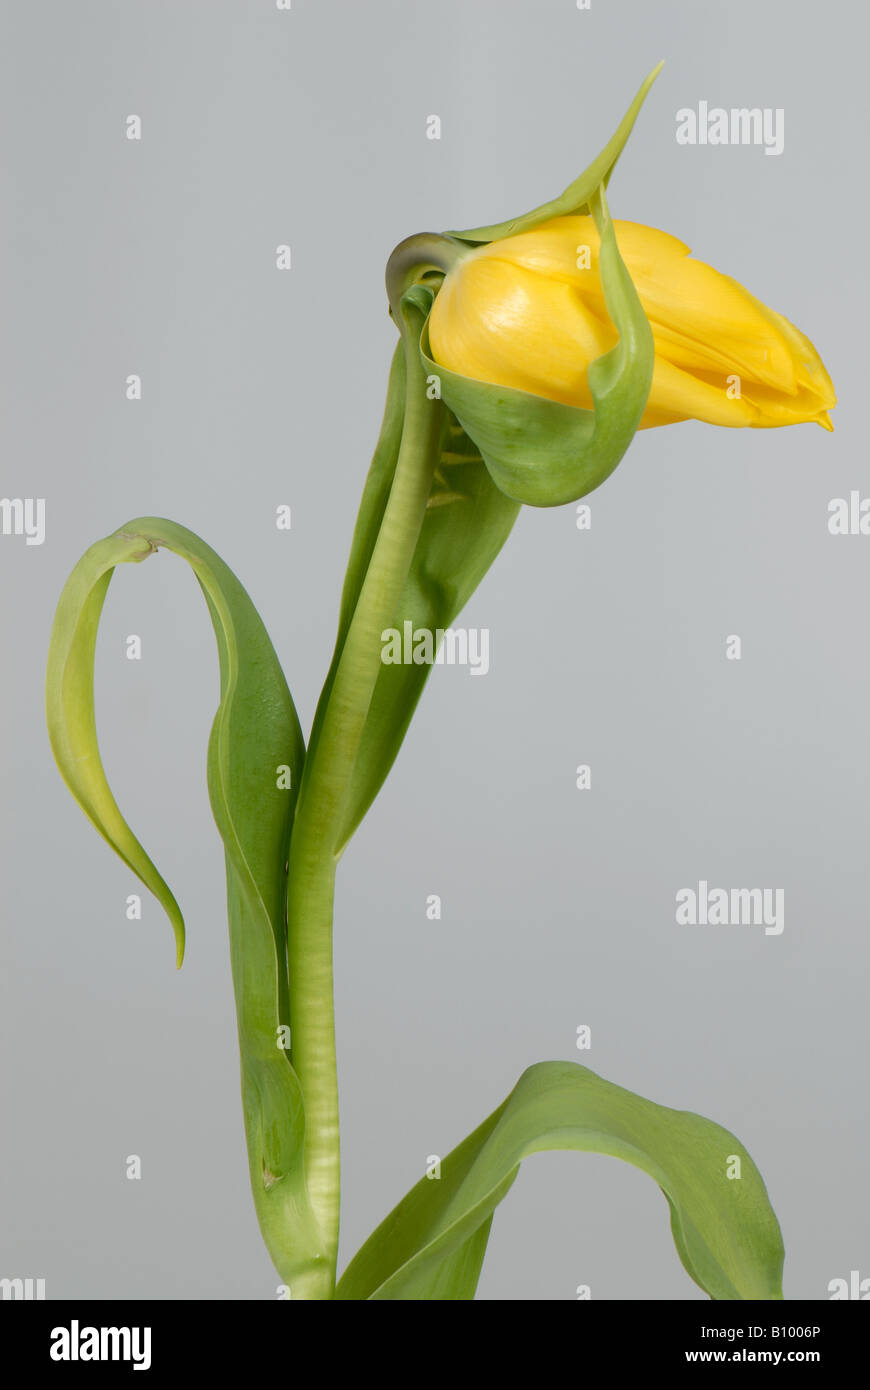 Cortar tulip flower atrapados por unió sépalos Foto de stock